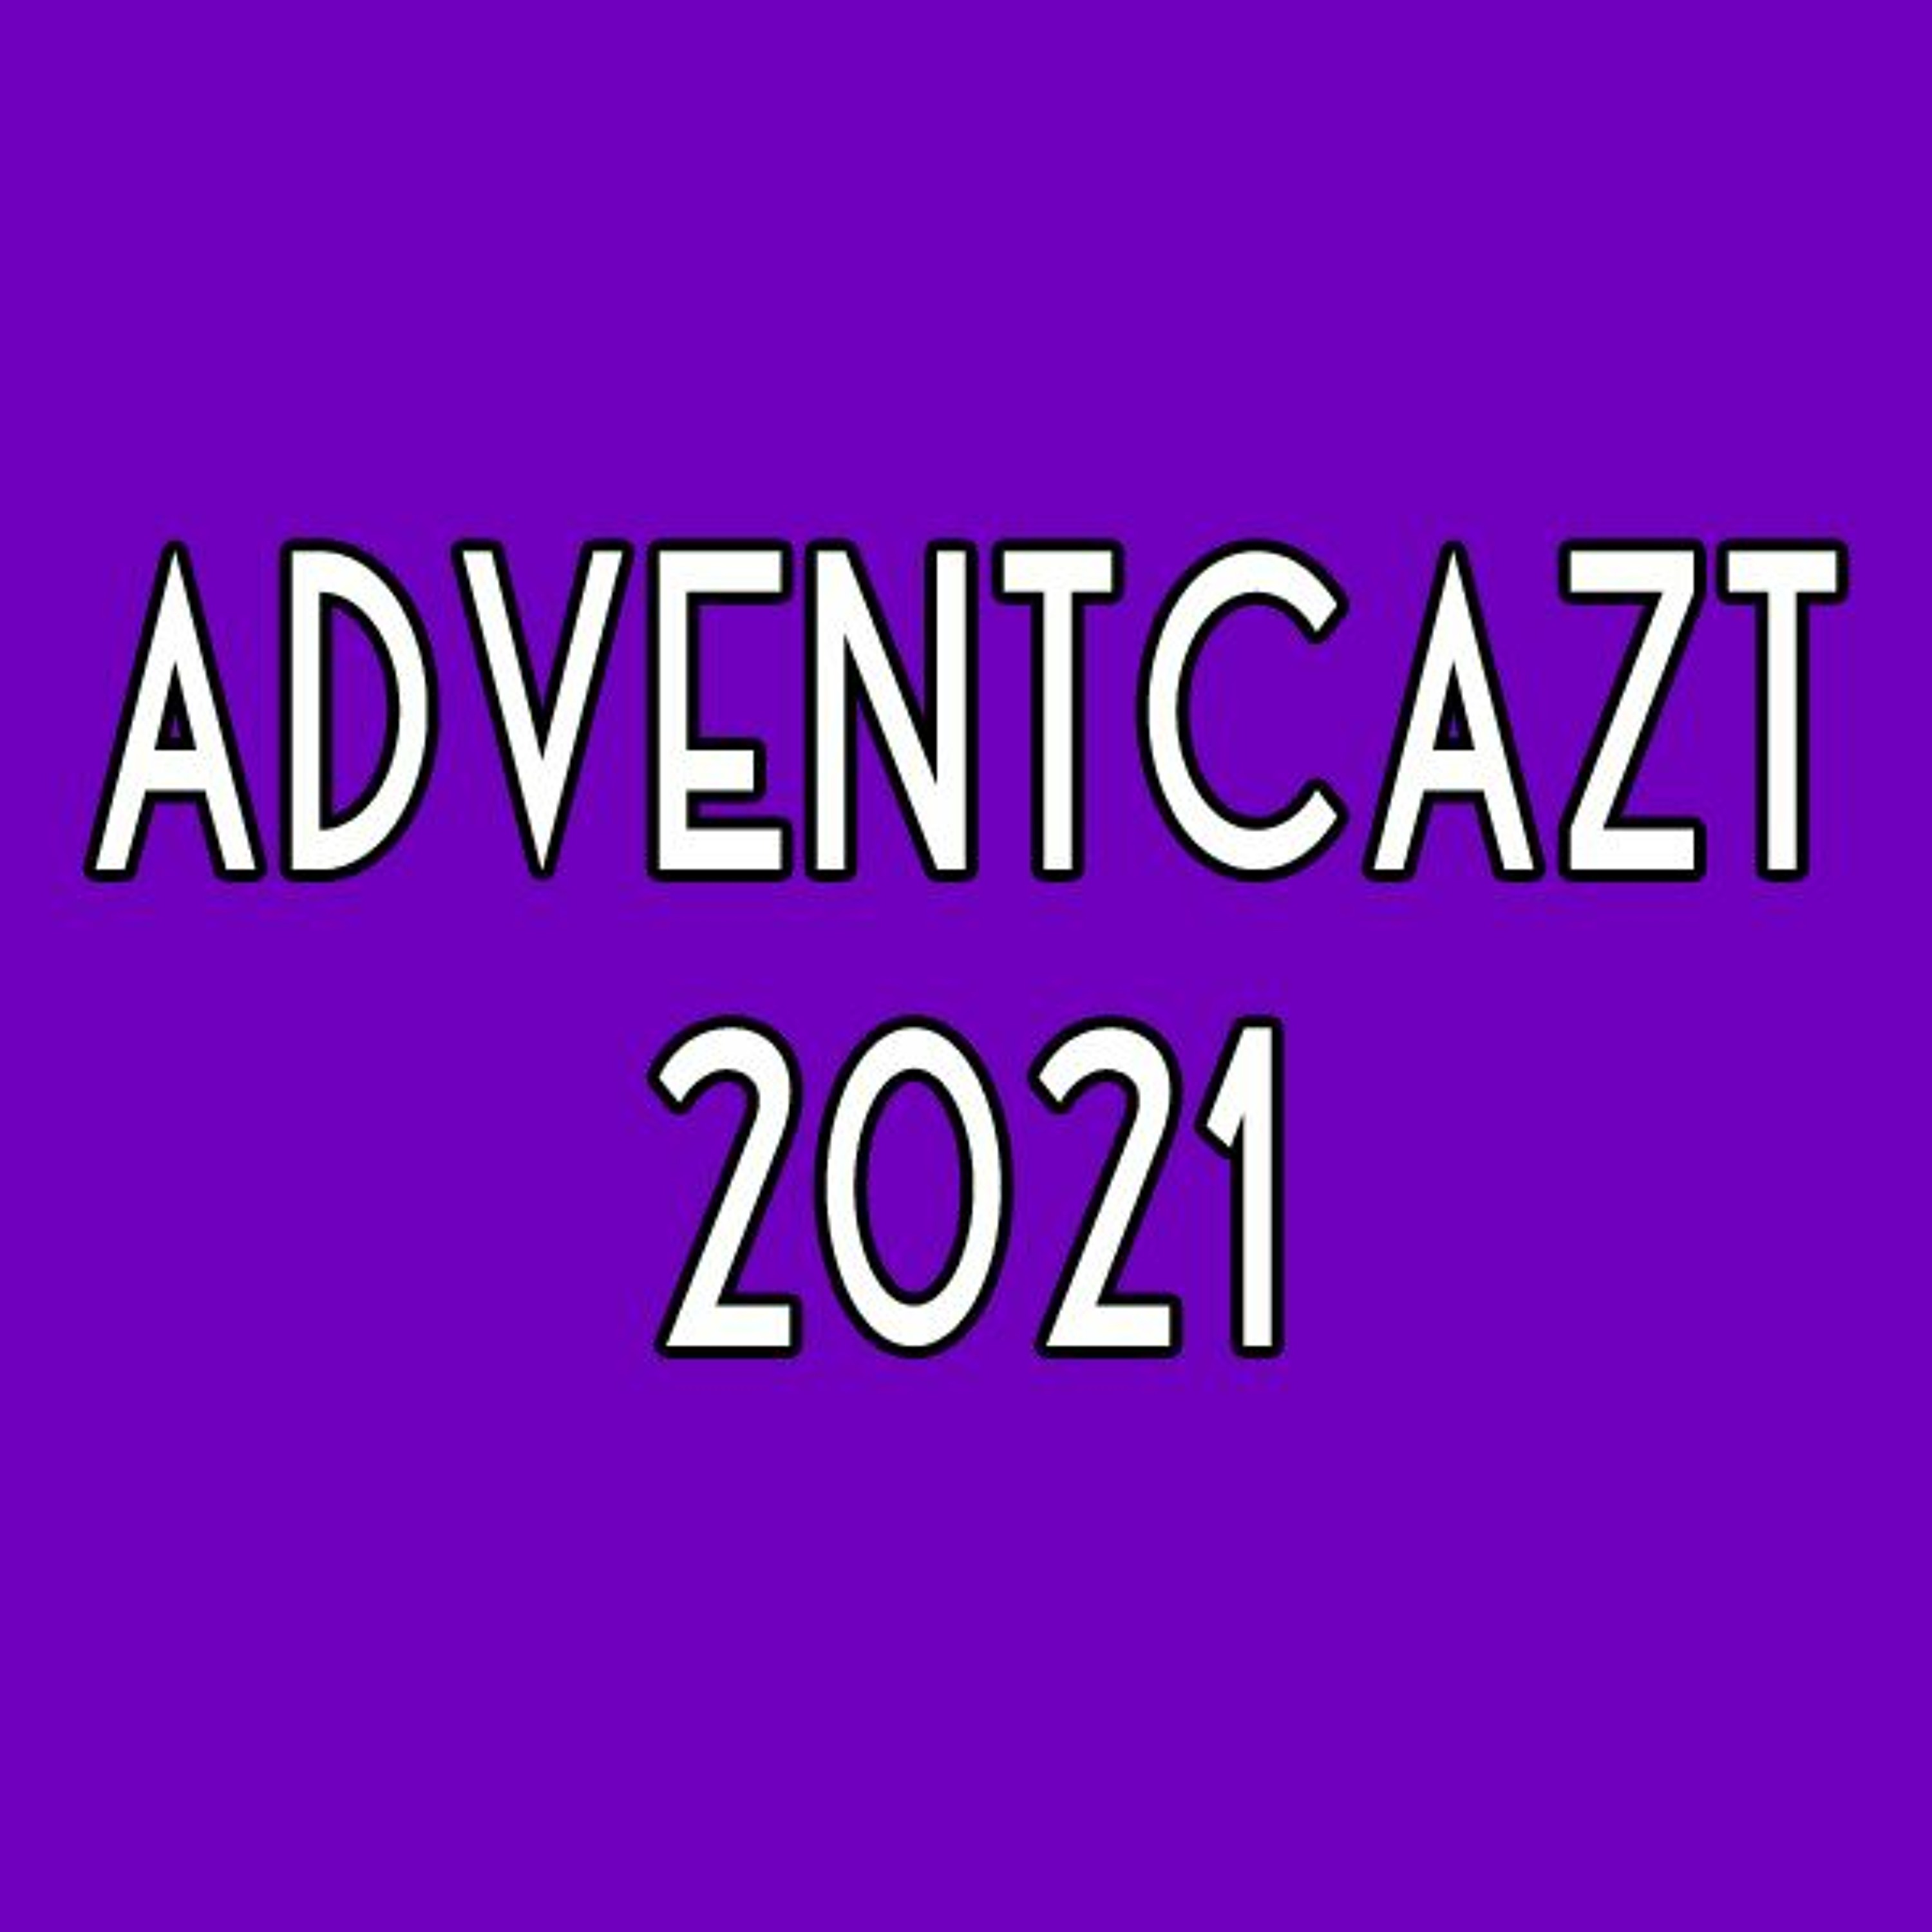 ADVENTCAzT 2021: 05 - Thursday 1st Week of Advent